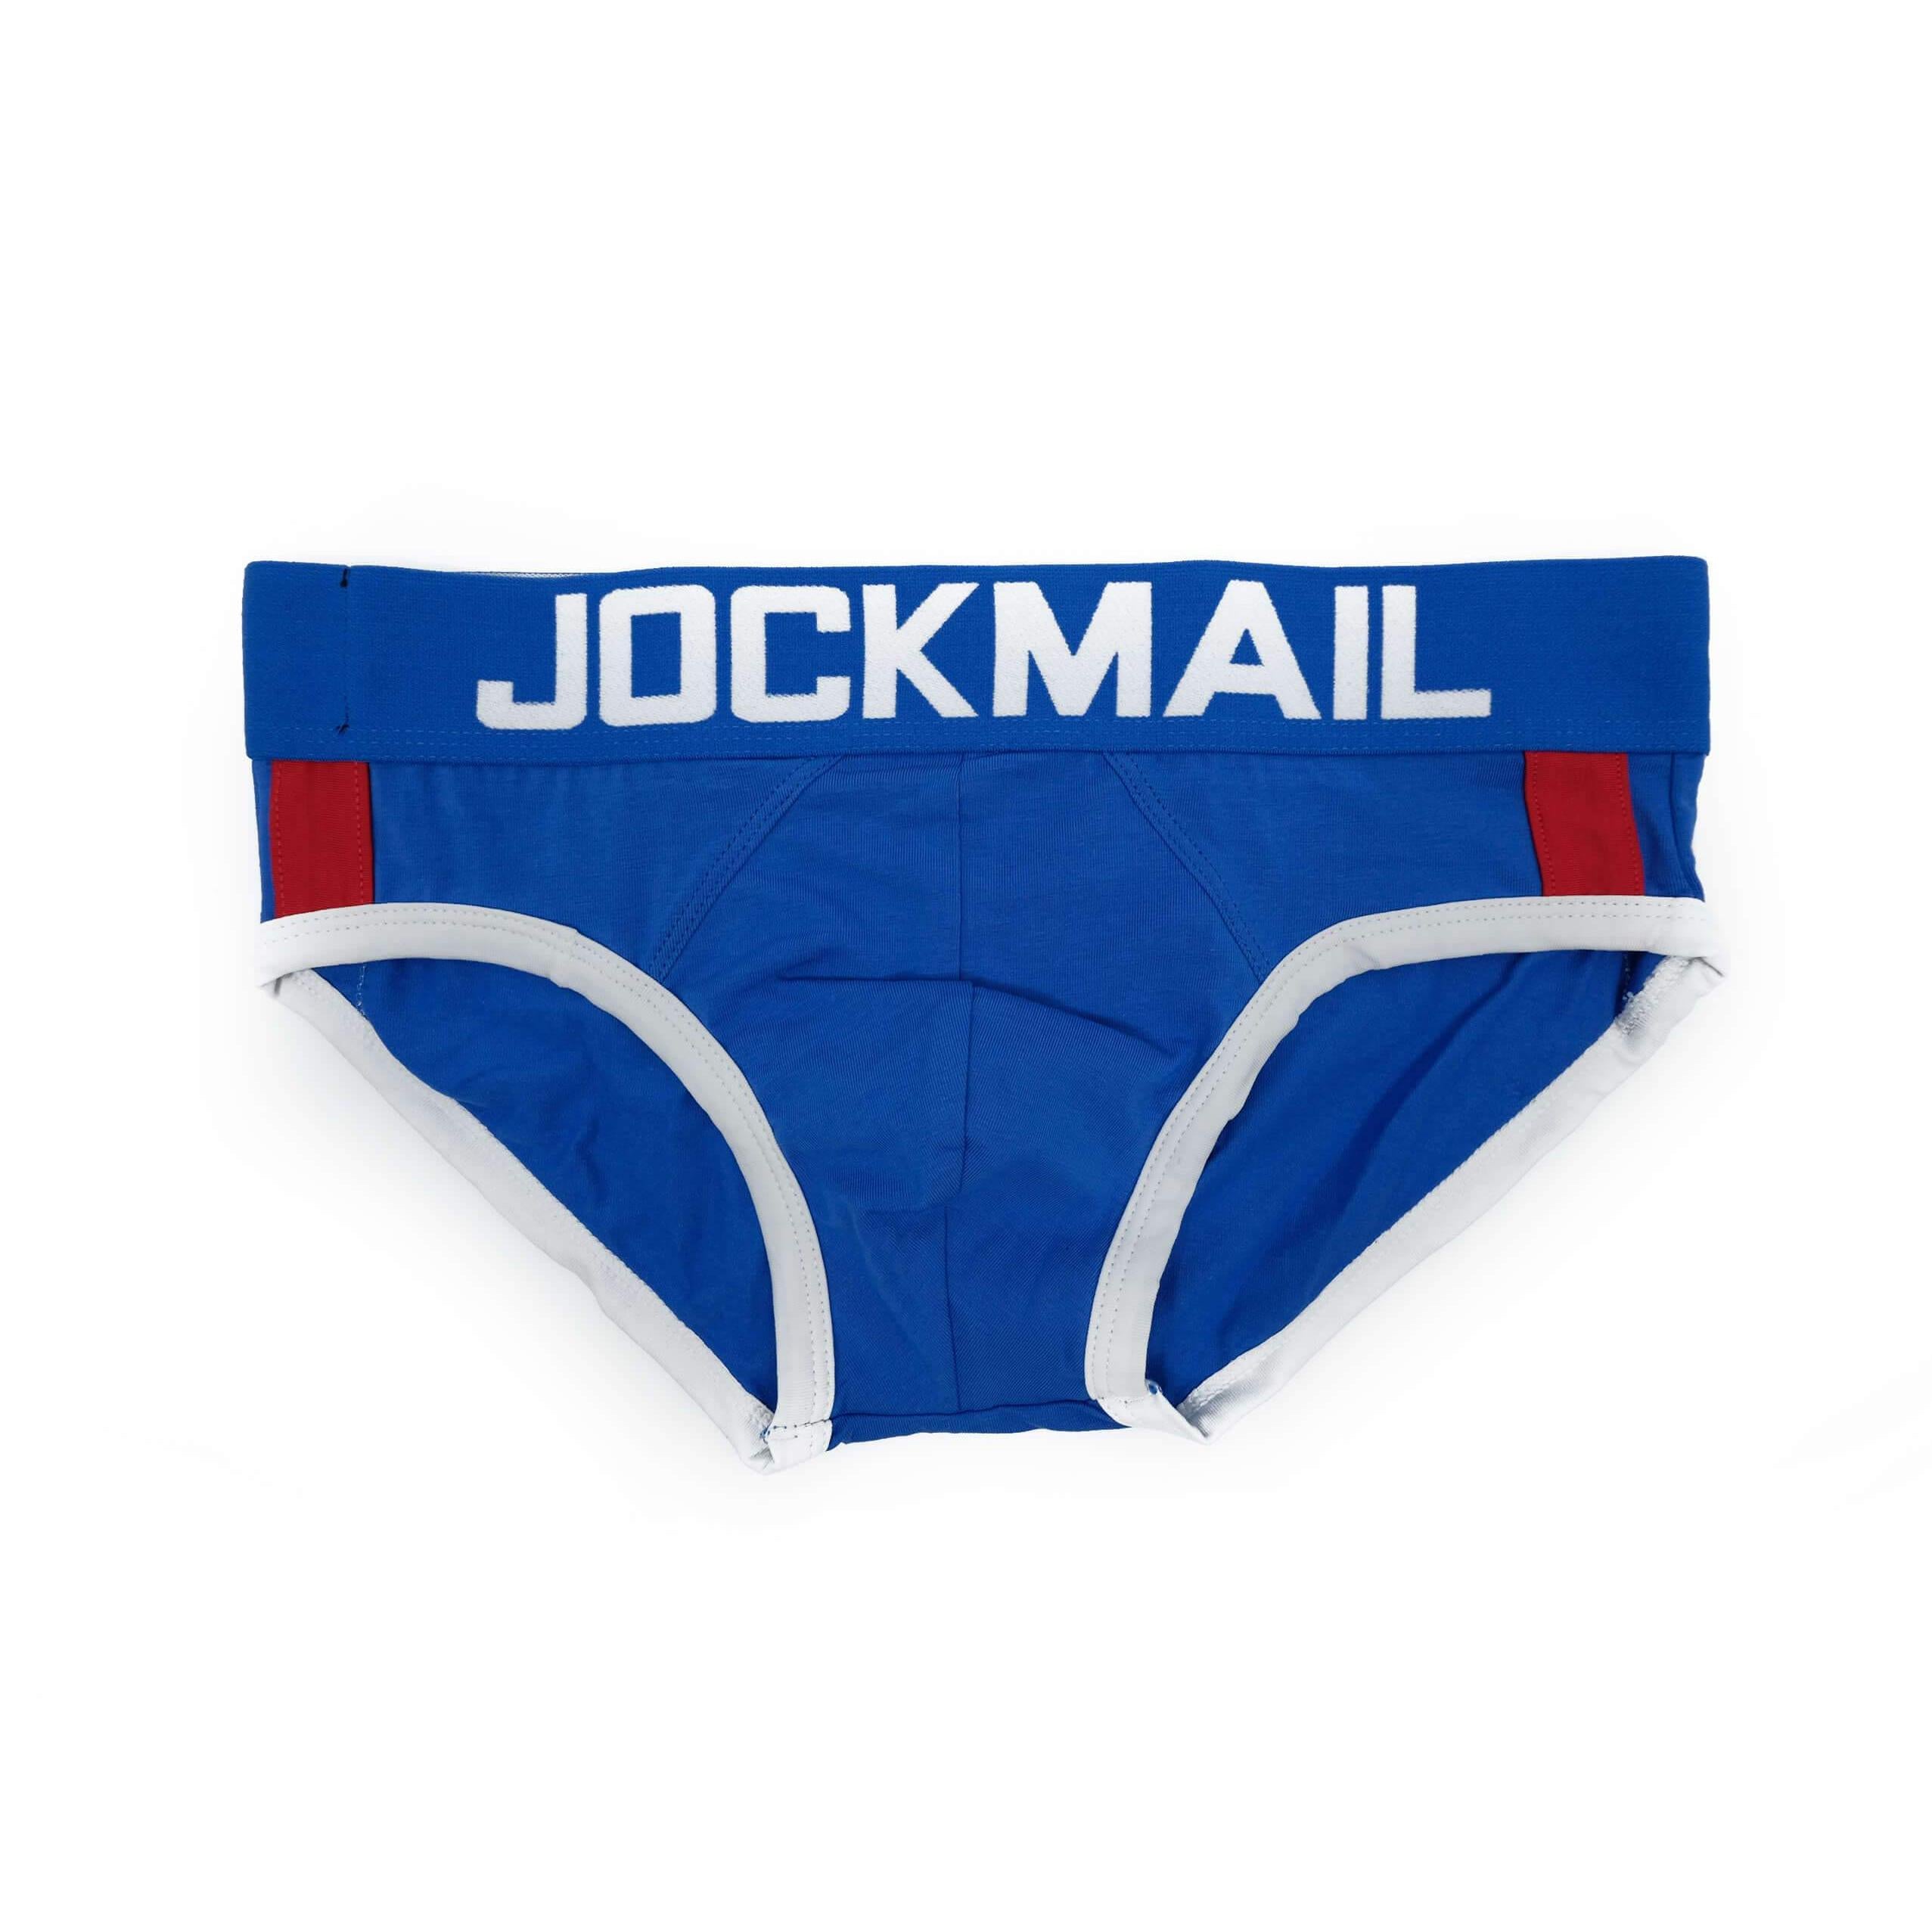 Jockmail Packing Jockstrap